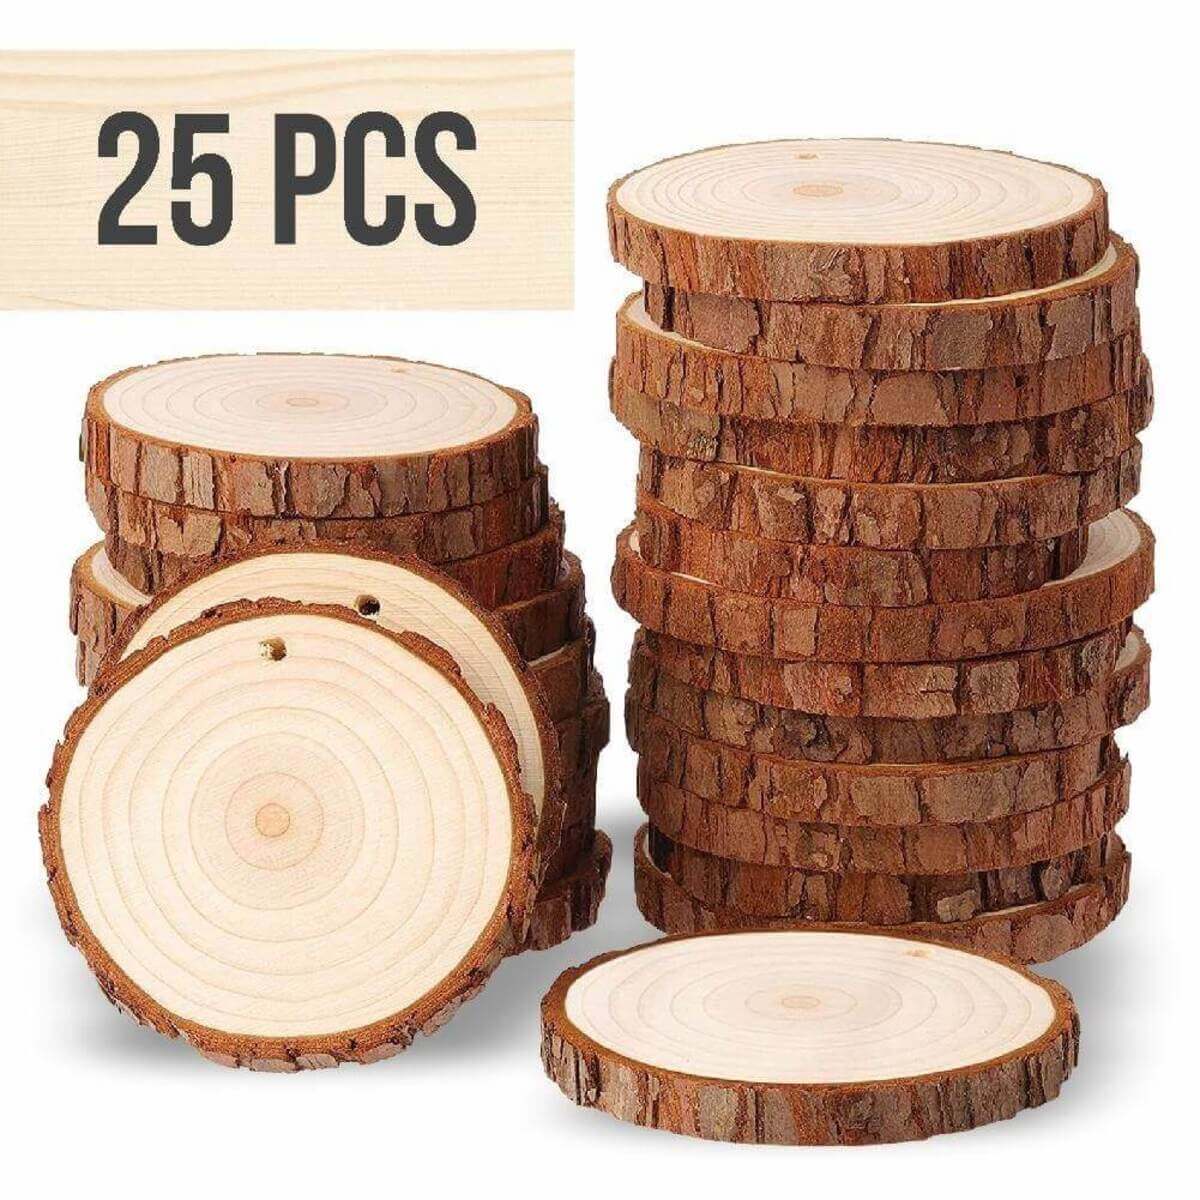 25 pcs wood slices